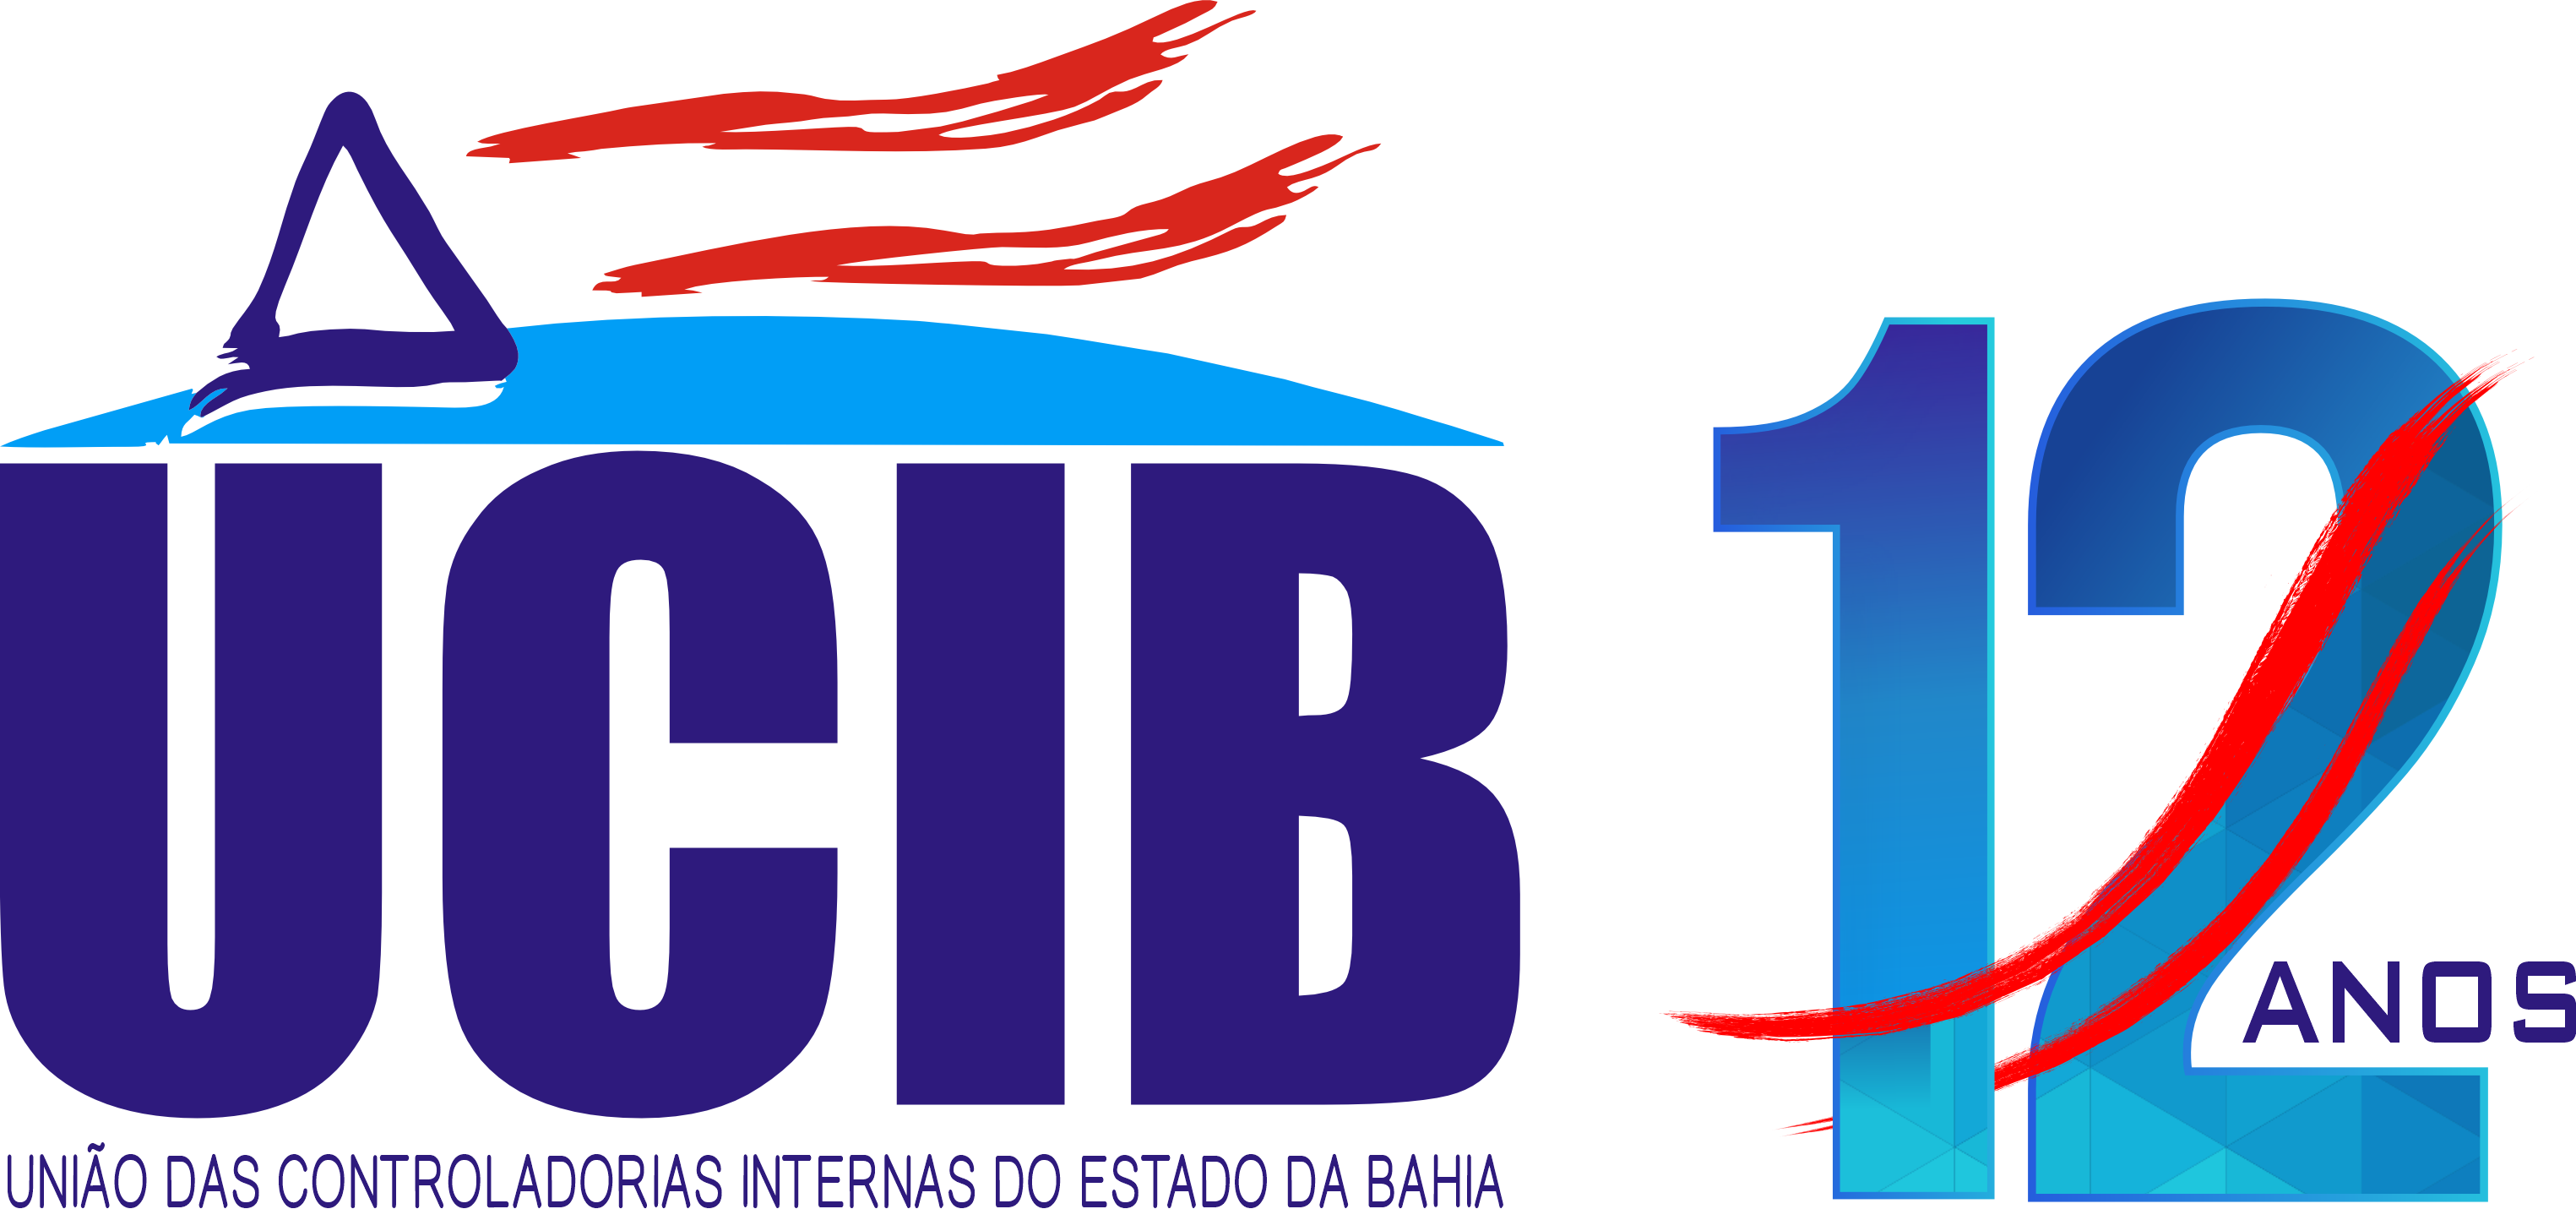 .: UCIB .: União das Controladorias Internas